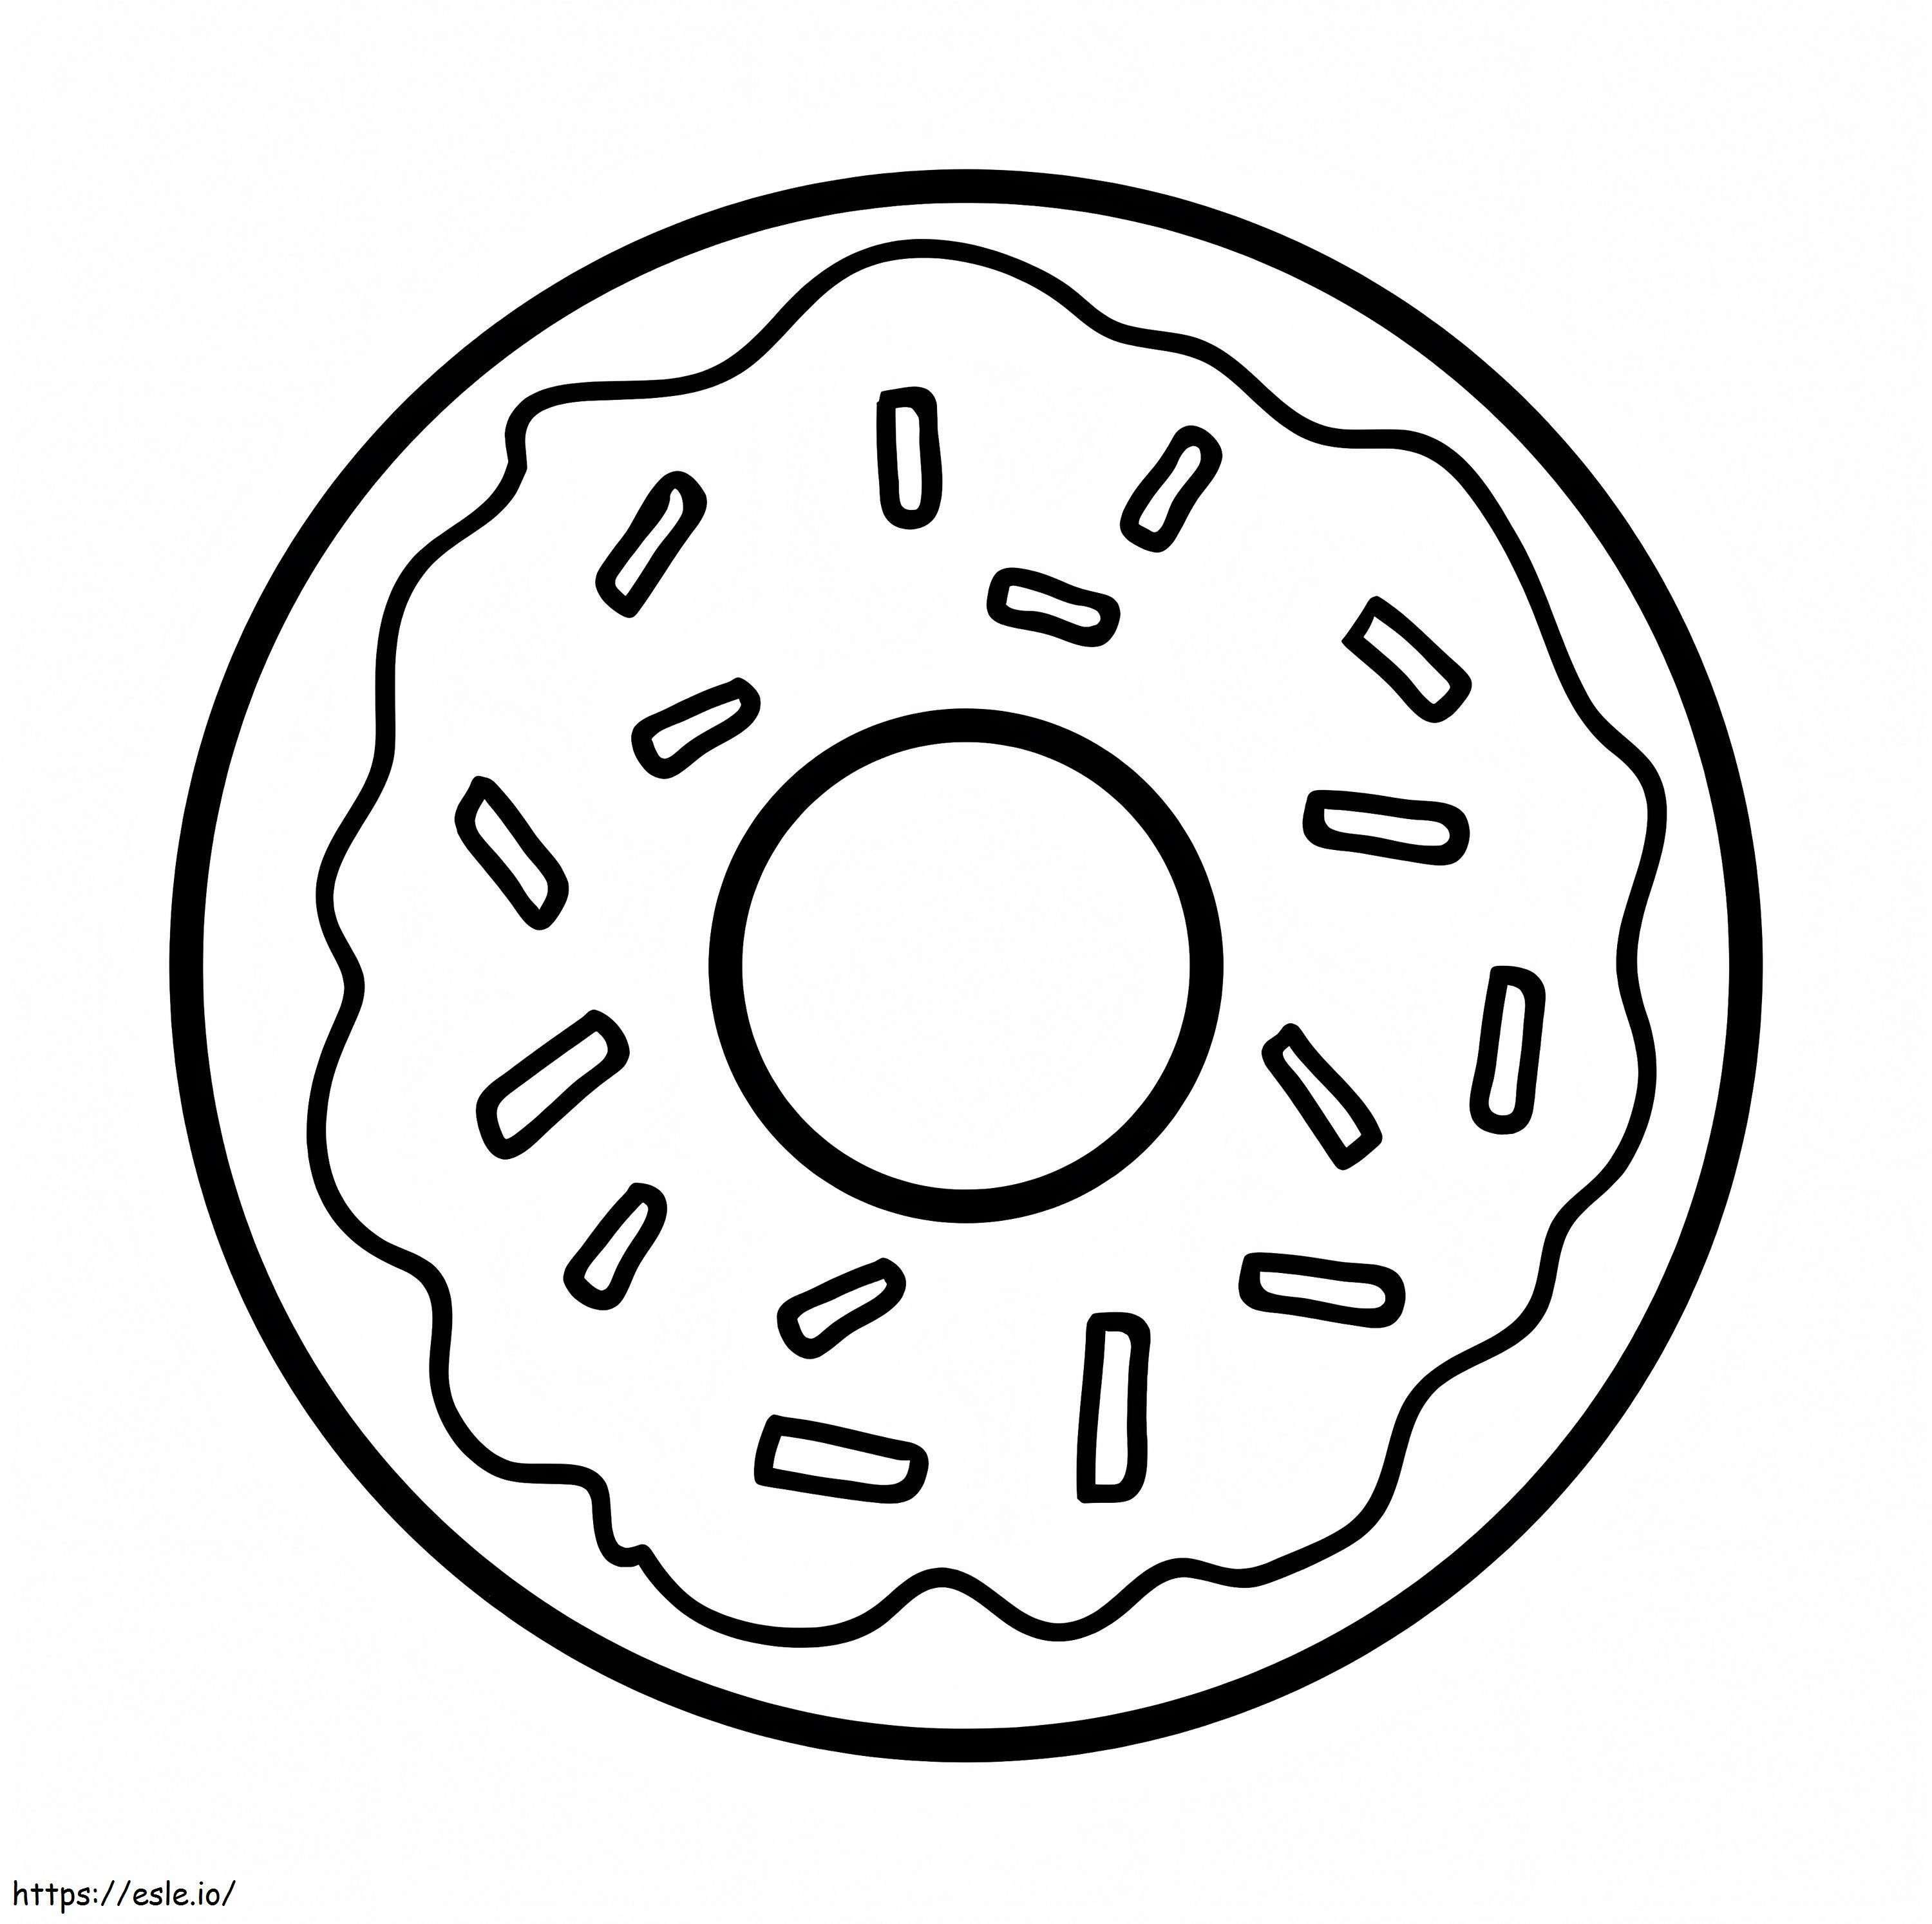 Perfekter Donut ausmalbilder